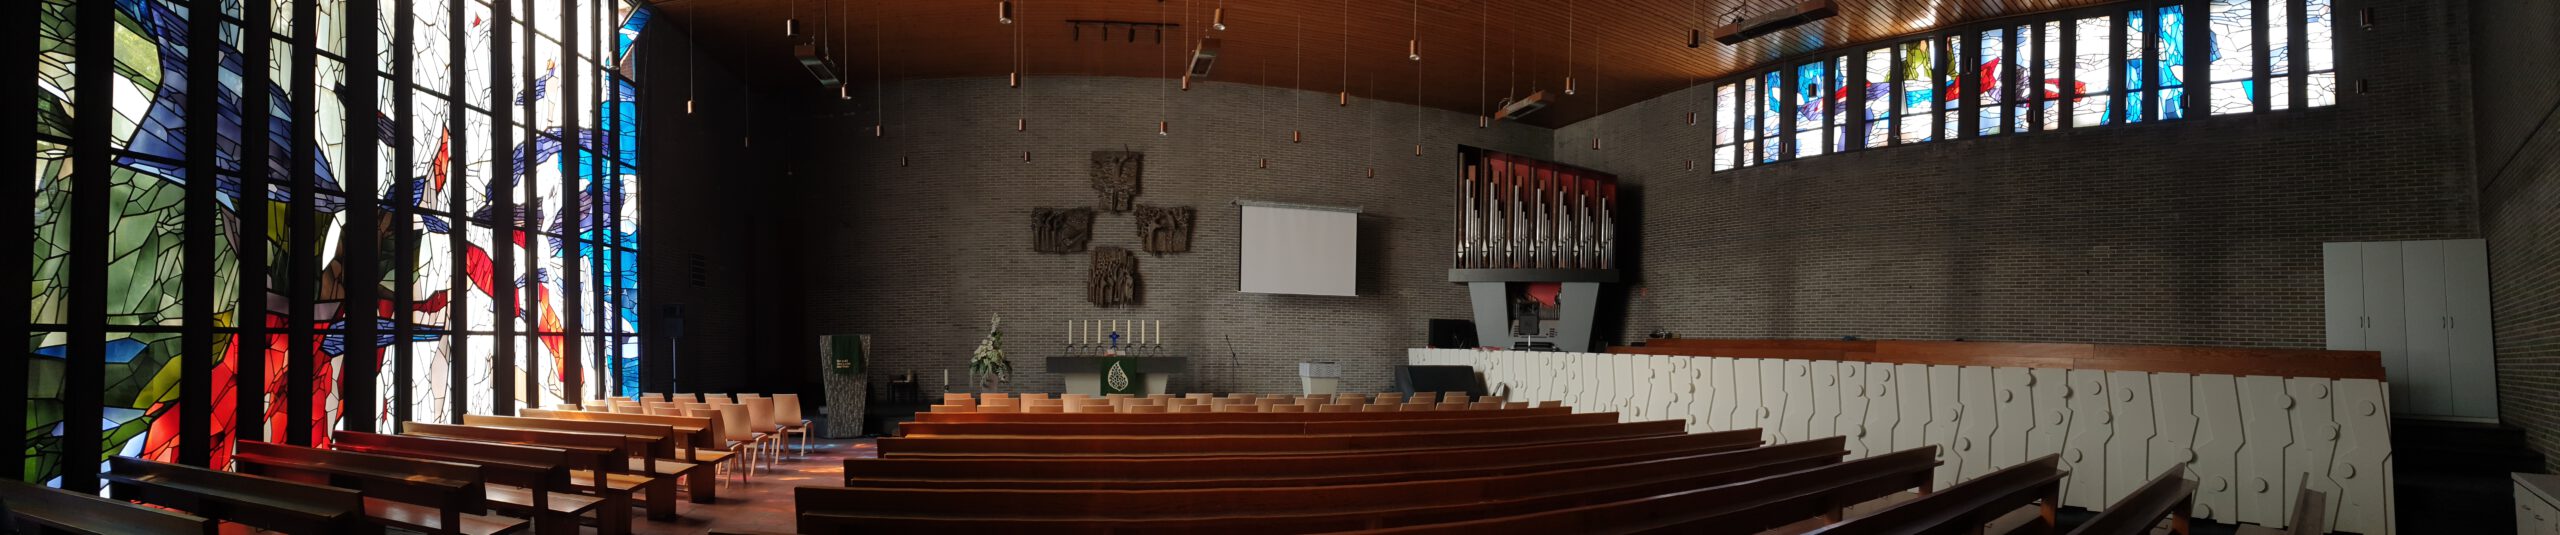 Auferstehungskirche Innen Panorama